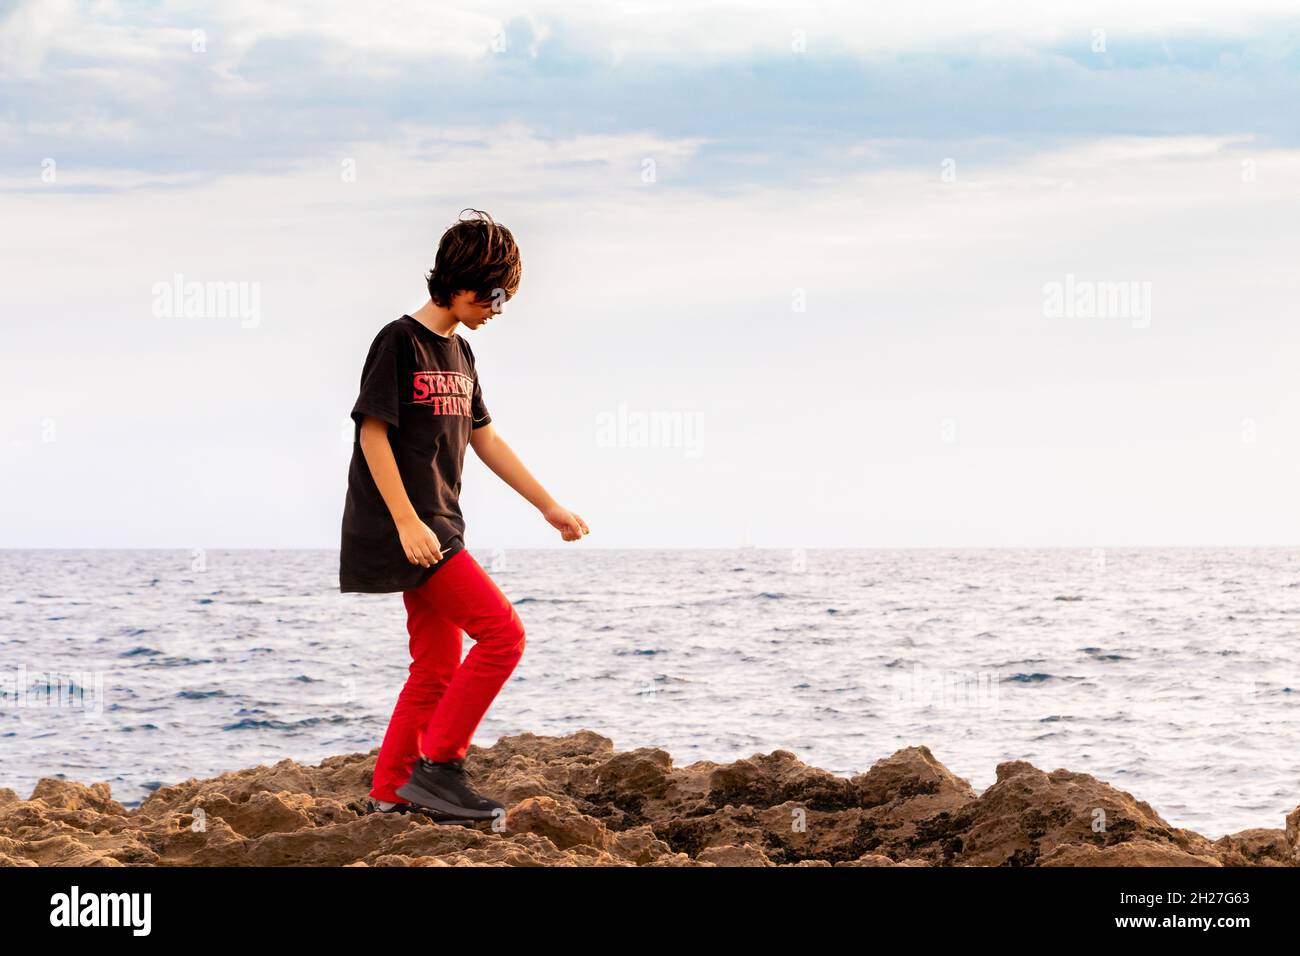 Vue en soirée d'un jeune garçon qui claque sur les rochers au bord de la mer à CAN Pastilla près de Palma Mallorca Espagne Banque D'Images